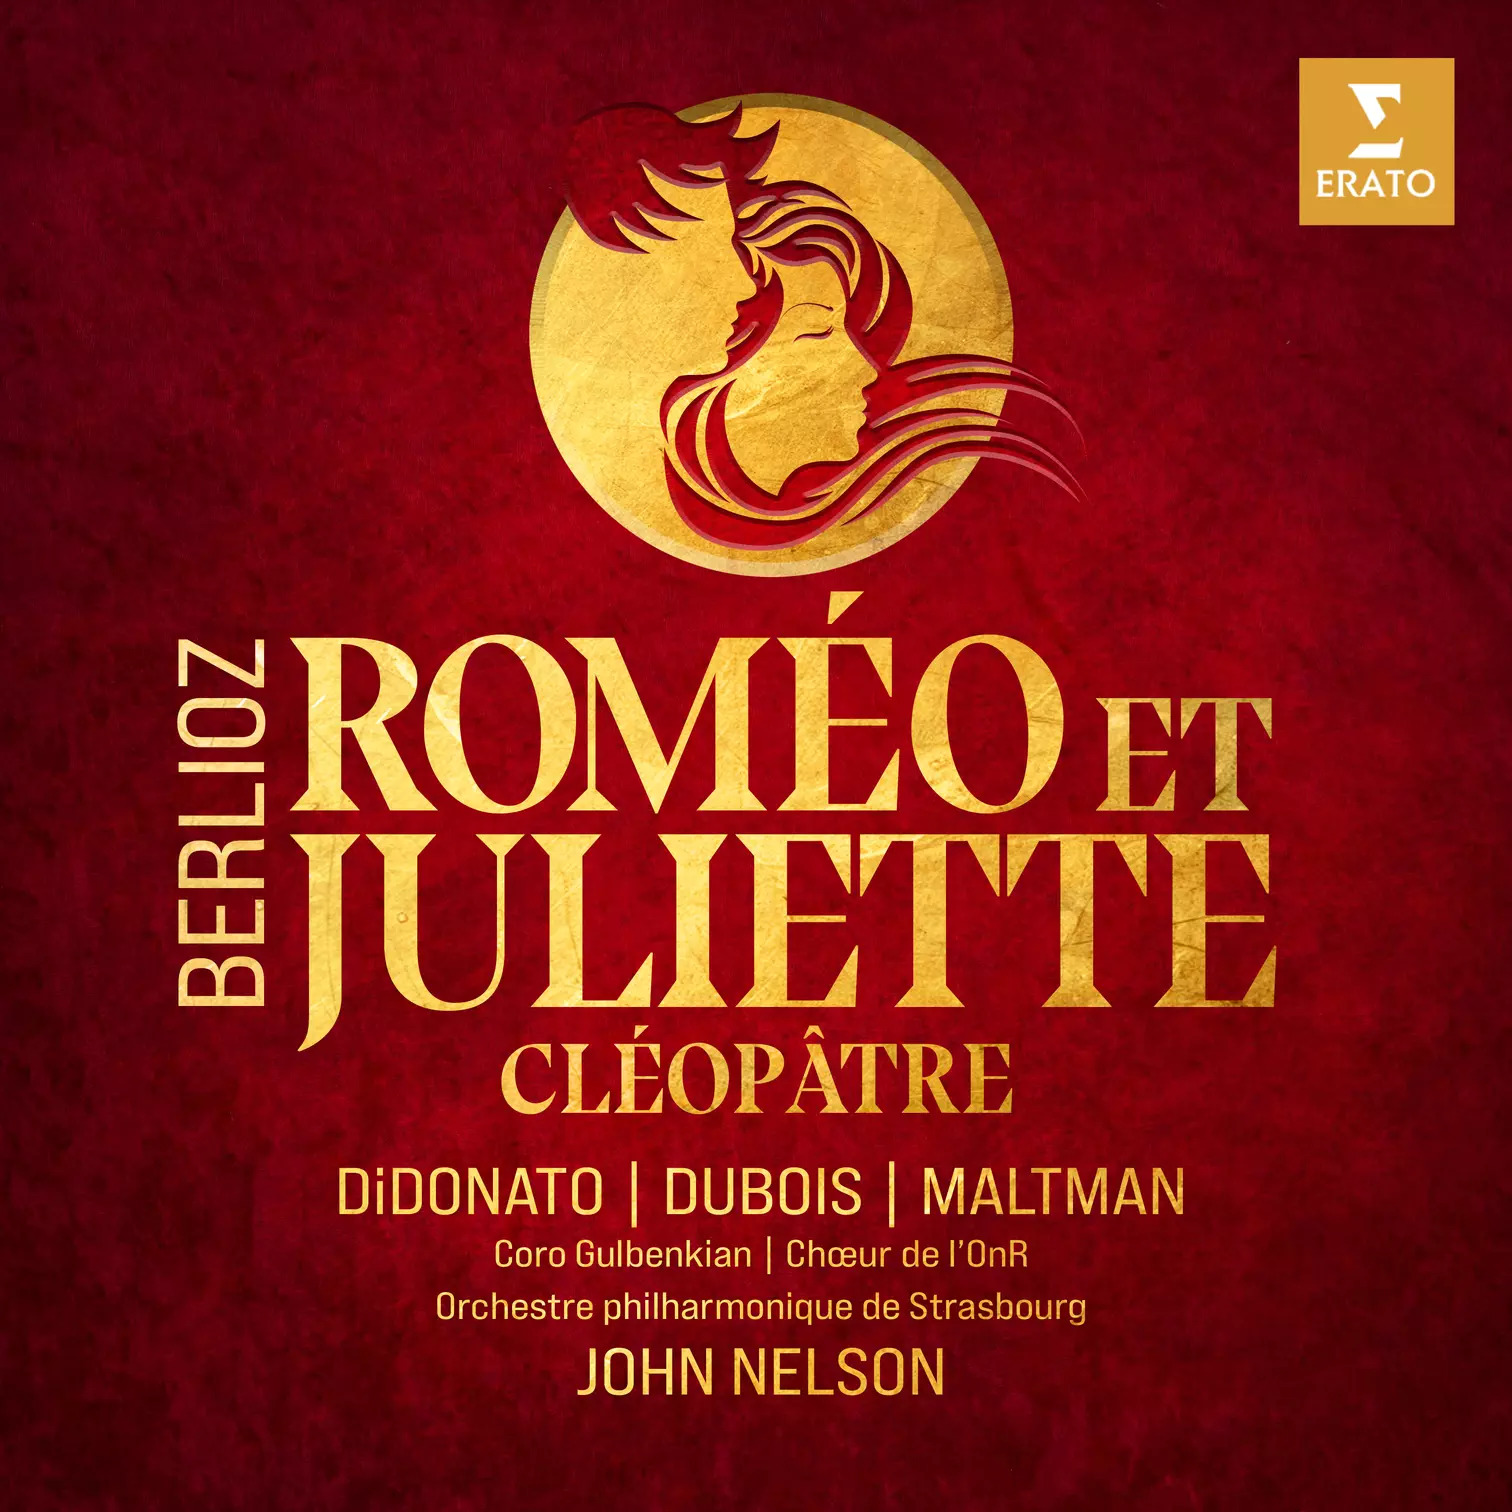 Roméo et Juliette, symphonie vraiment dramatique avec John Nelson ...